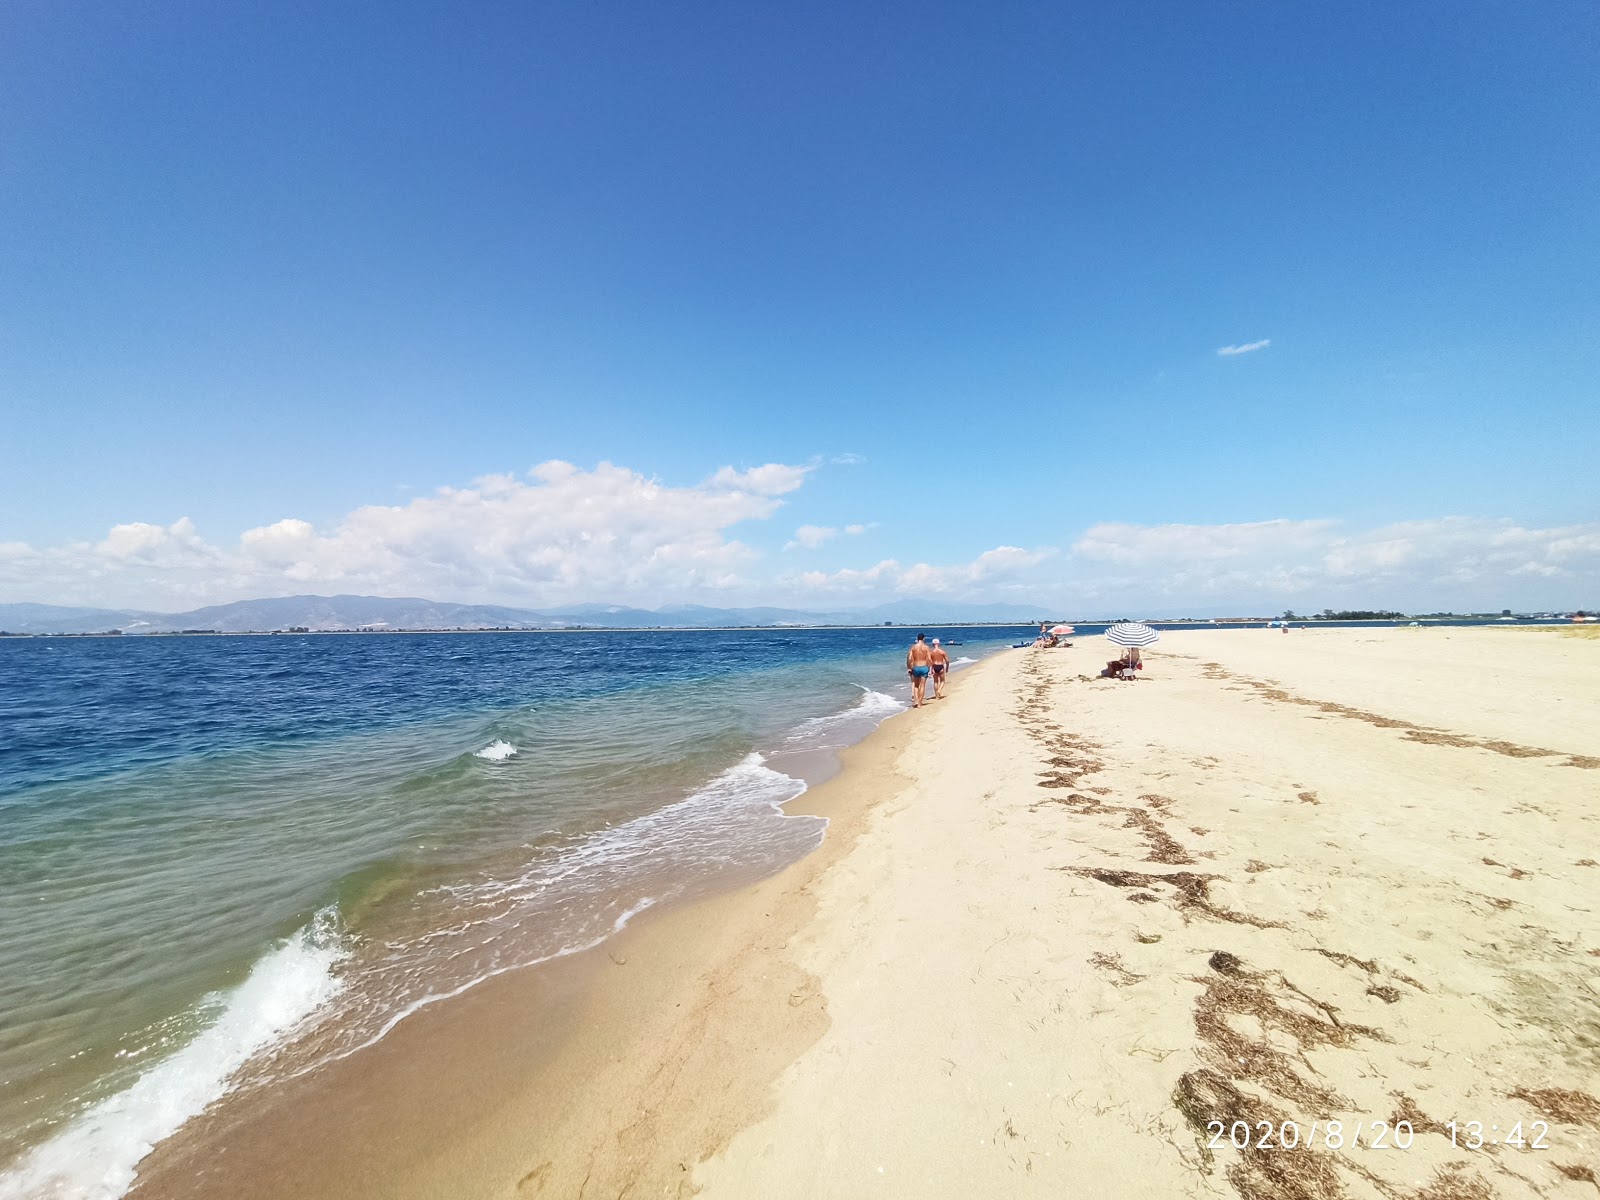 Zdjęcie Ammoglossa beach z powierzchnią jasny piasek